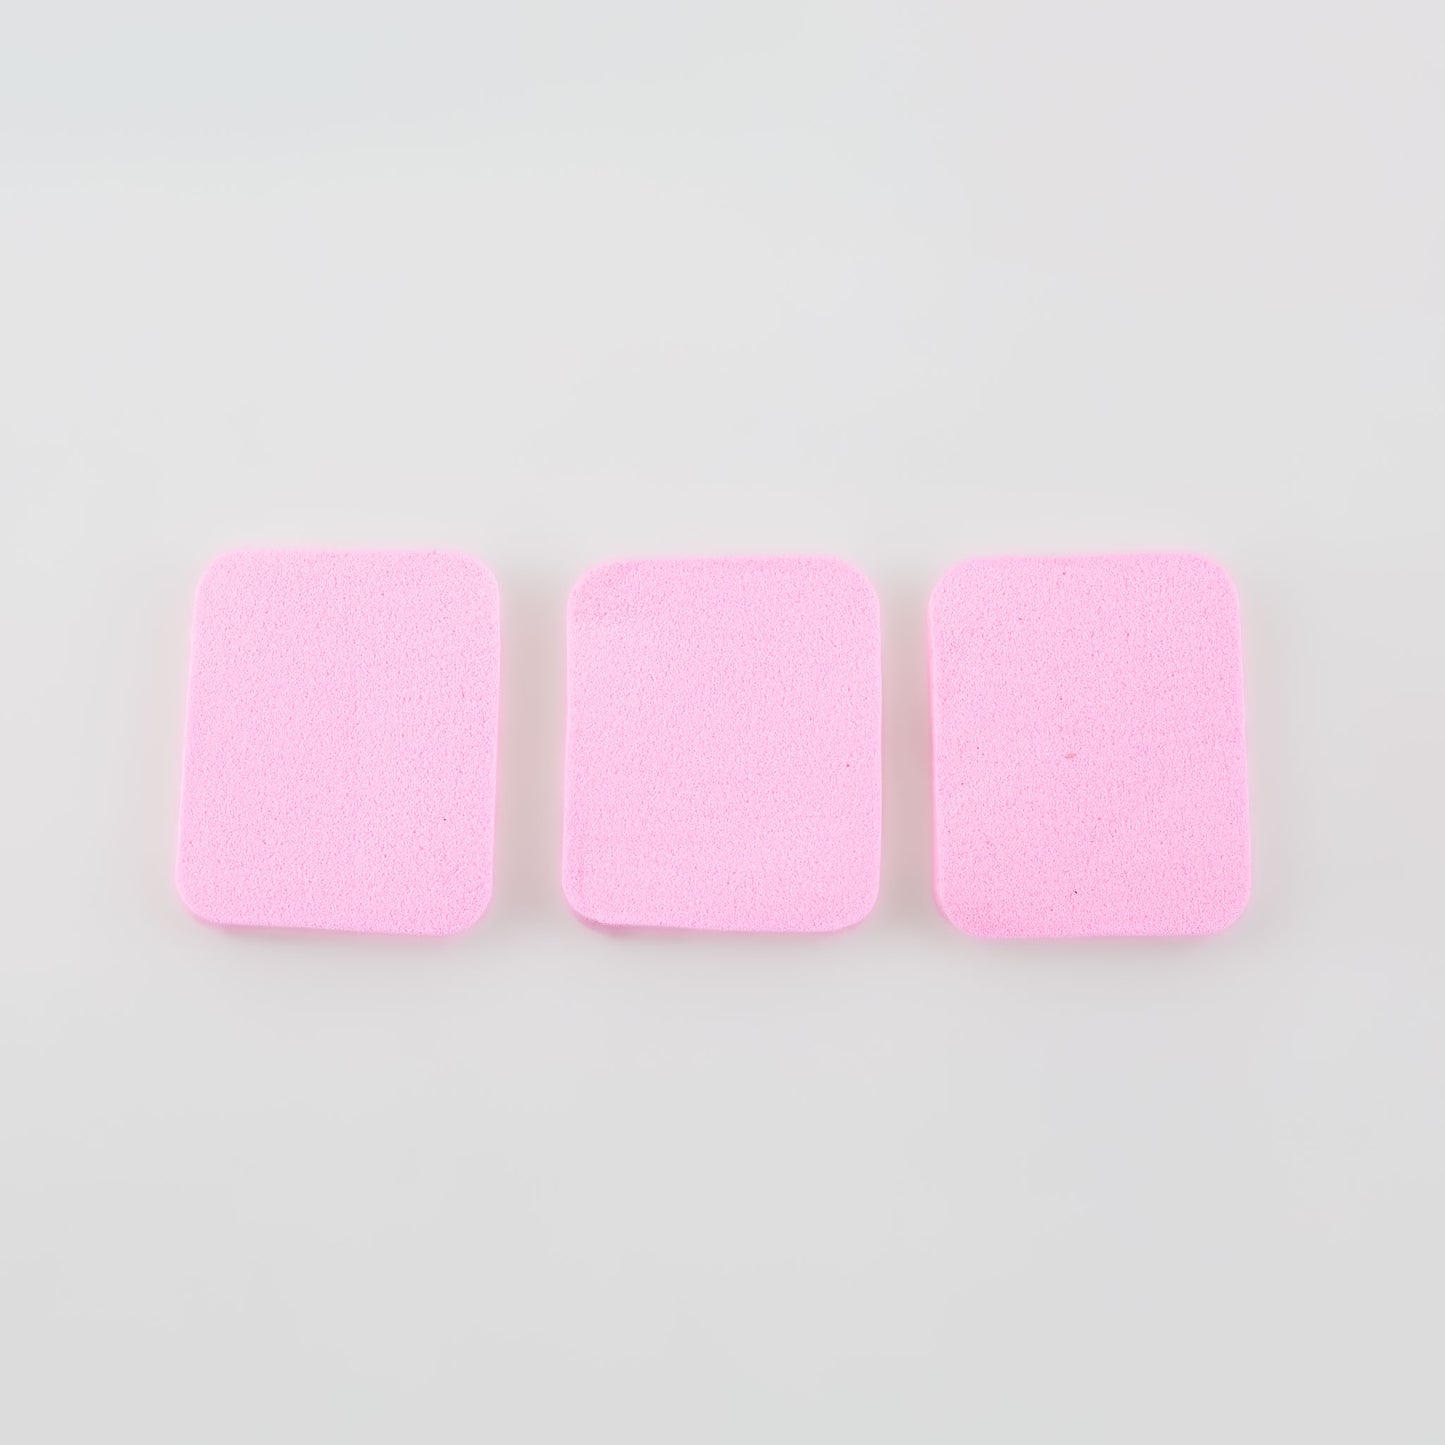 Burete machiaj în formă dreptunghiulară, 5 x 4 cm, set 3 buc - Roz